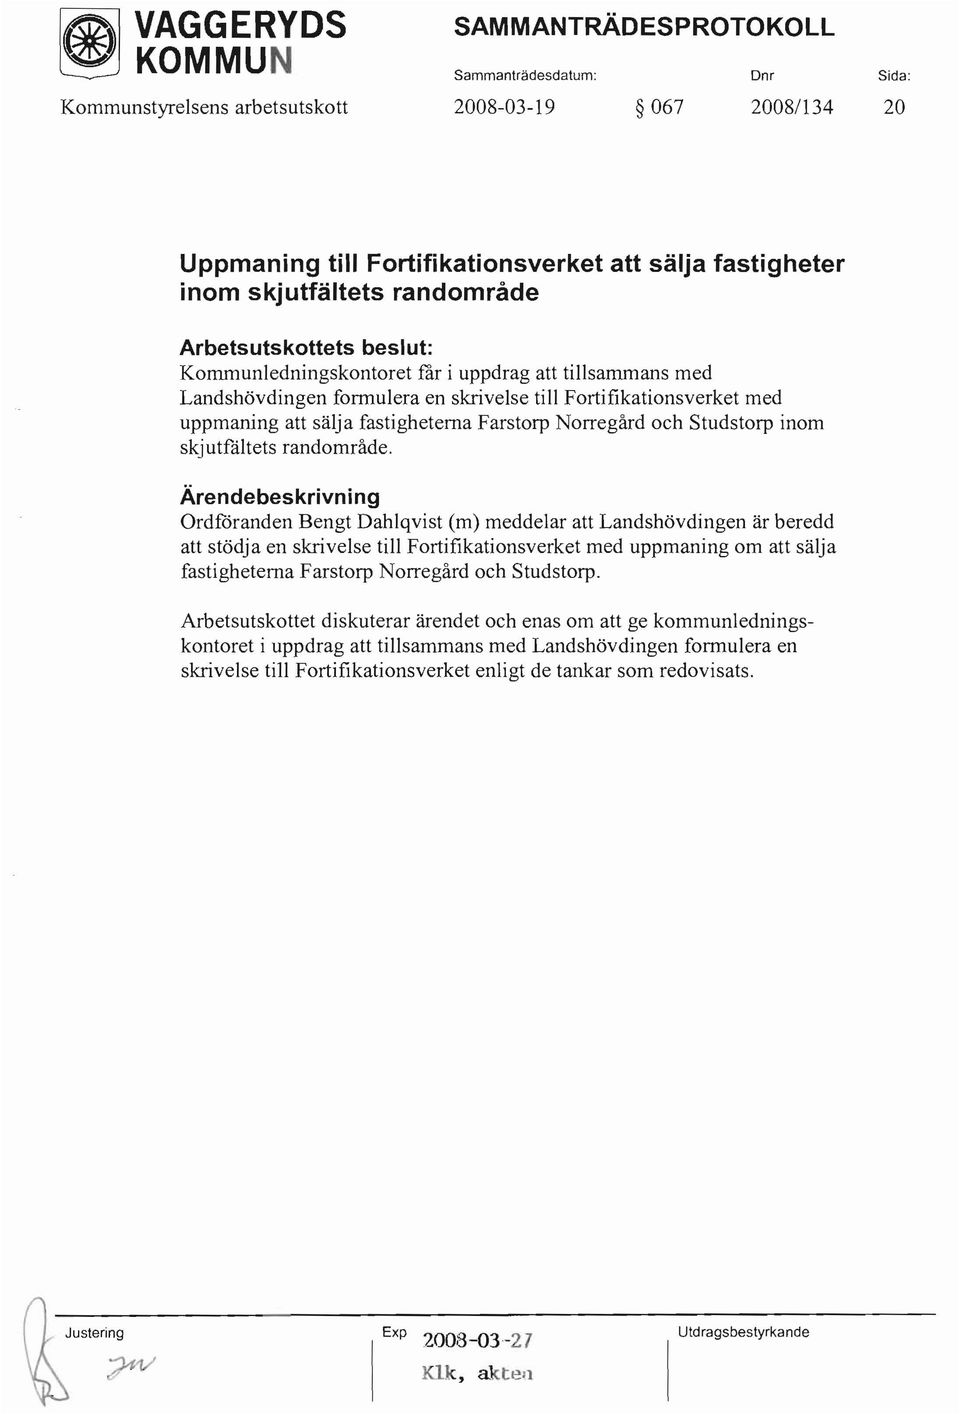 Ordfåranden Bengt Dahlqvist (m) meddelar att Landshövdingen är beredd att stödja en skrivelse till Fortifikationsverket med uppmaning om att sälja fastigheterna Farstorp Norregård och Studstorp.